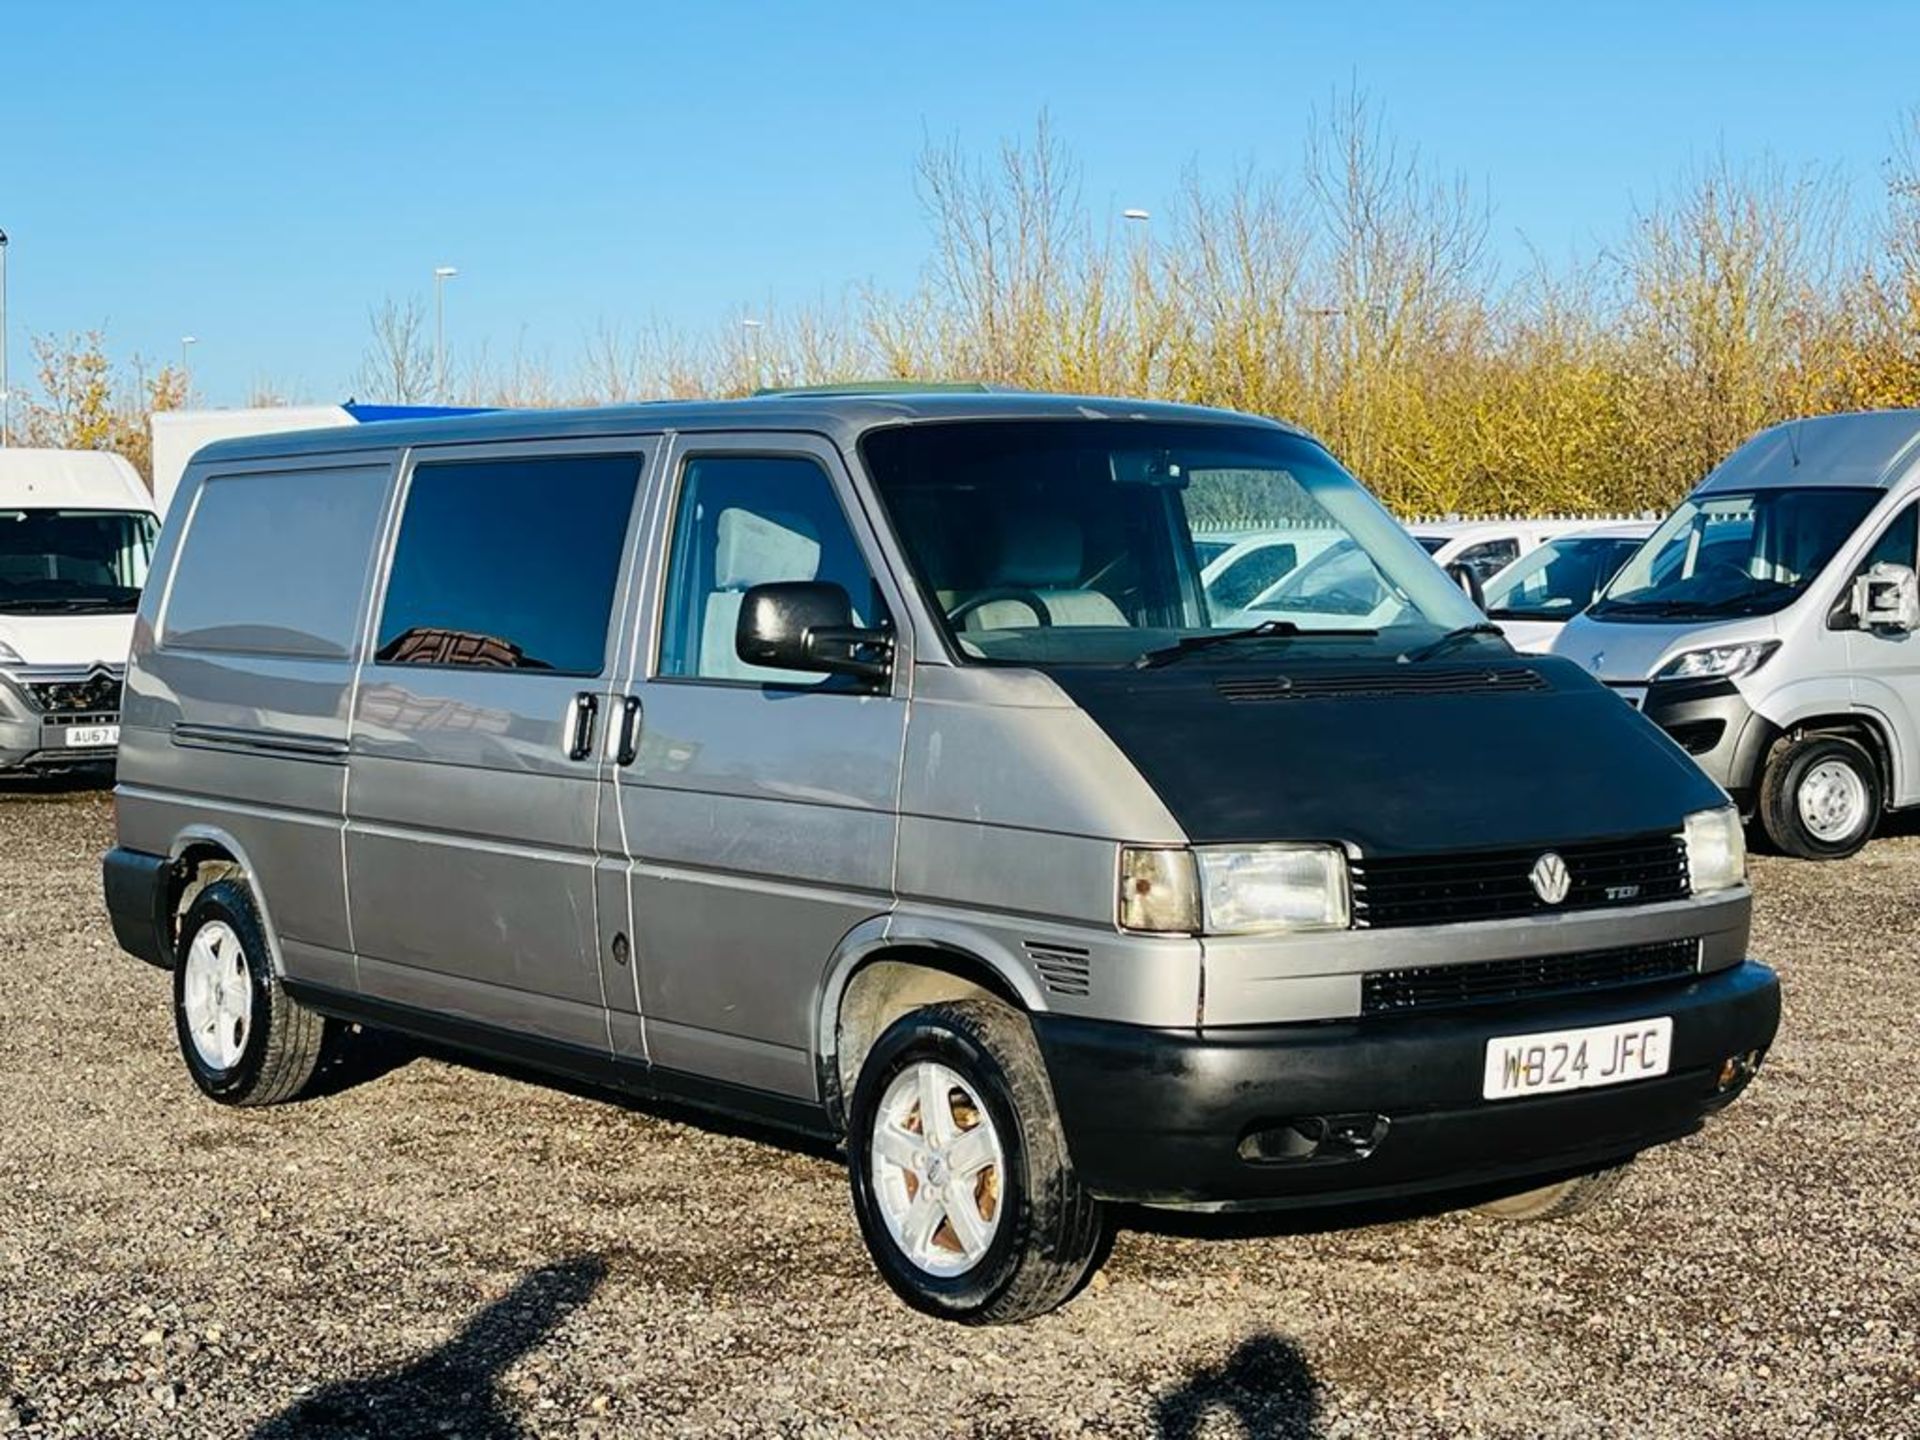 ** ON SALE ** Volkswagen Transporter 2.5 TDI LWB Crew Van 2000 'W Reg' Panel Van -A/C - No Vat